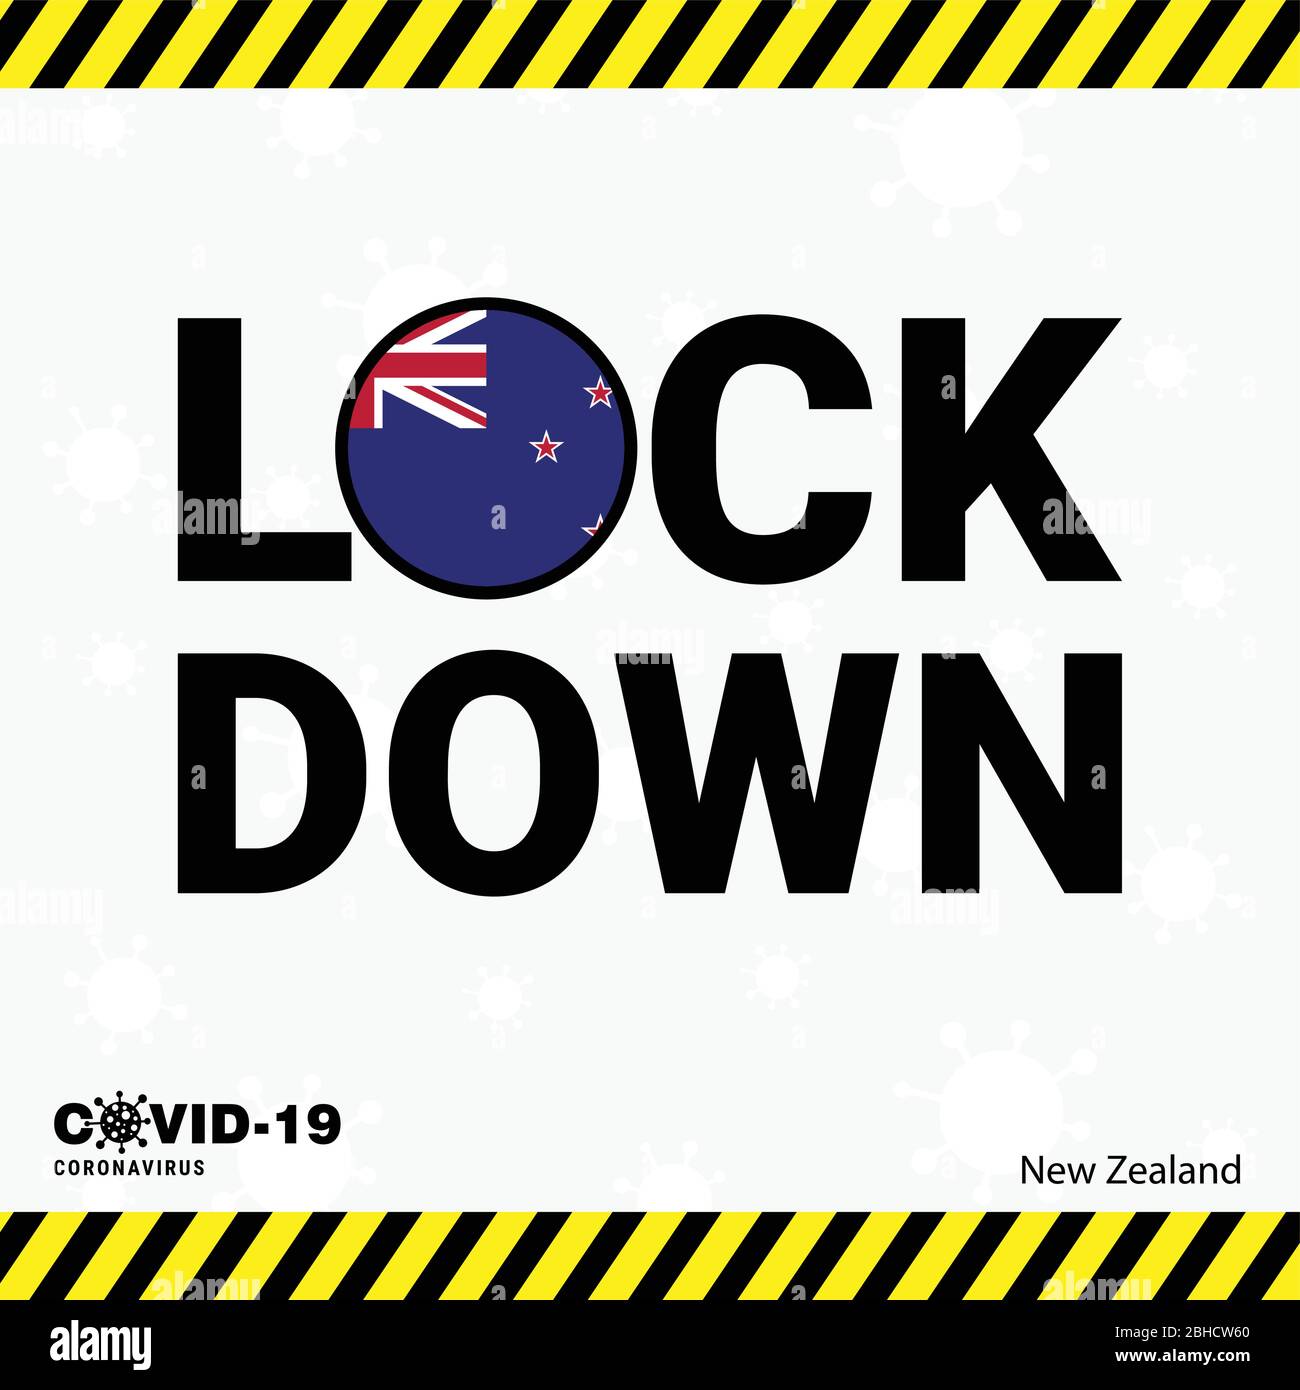 Coronavirus New Zealand Lock DOwn Typography with country flag. Coronavirus pandemic Lock Down Design Stock Vector